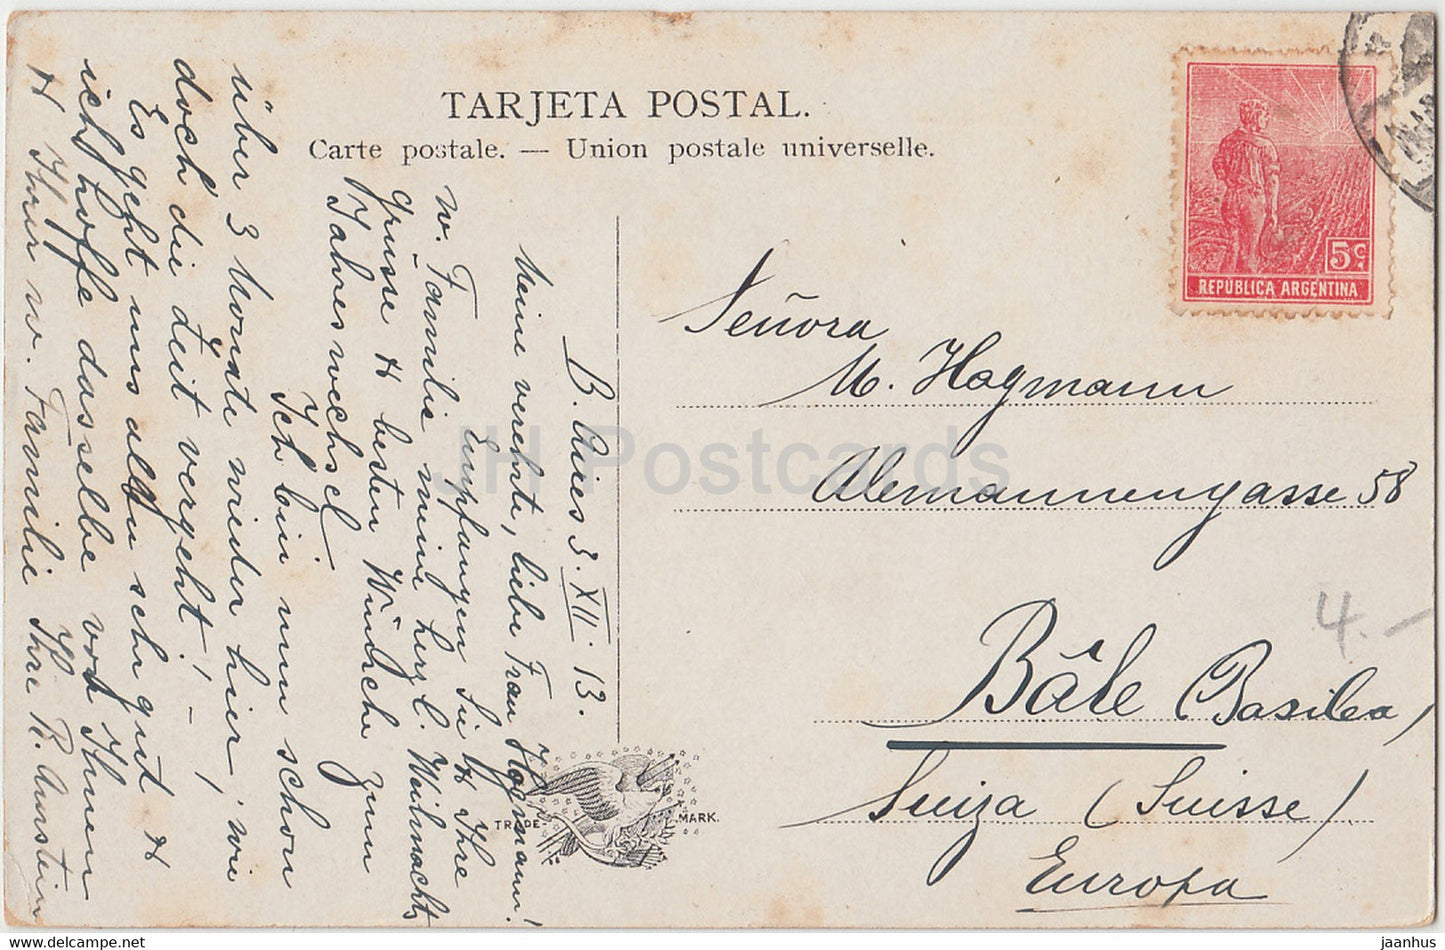 Punta Piedras - Mar del Plata - old postcard - 1913 - Argentina - used